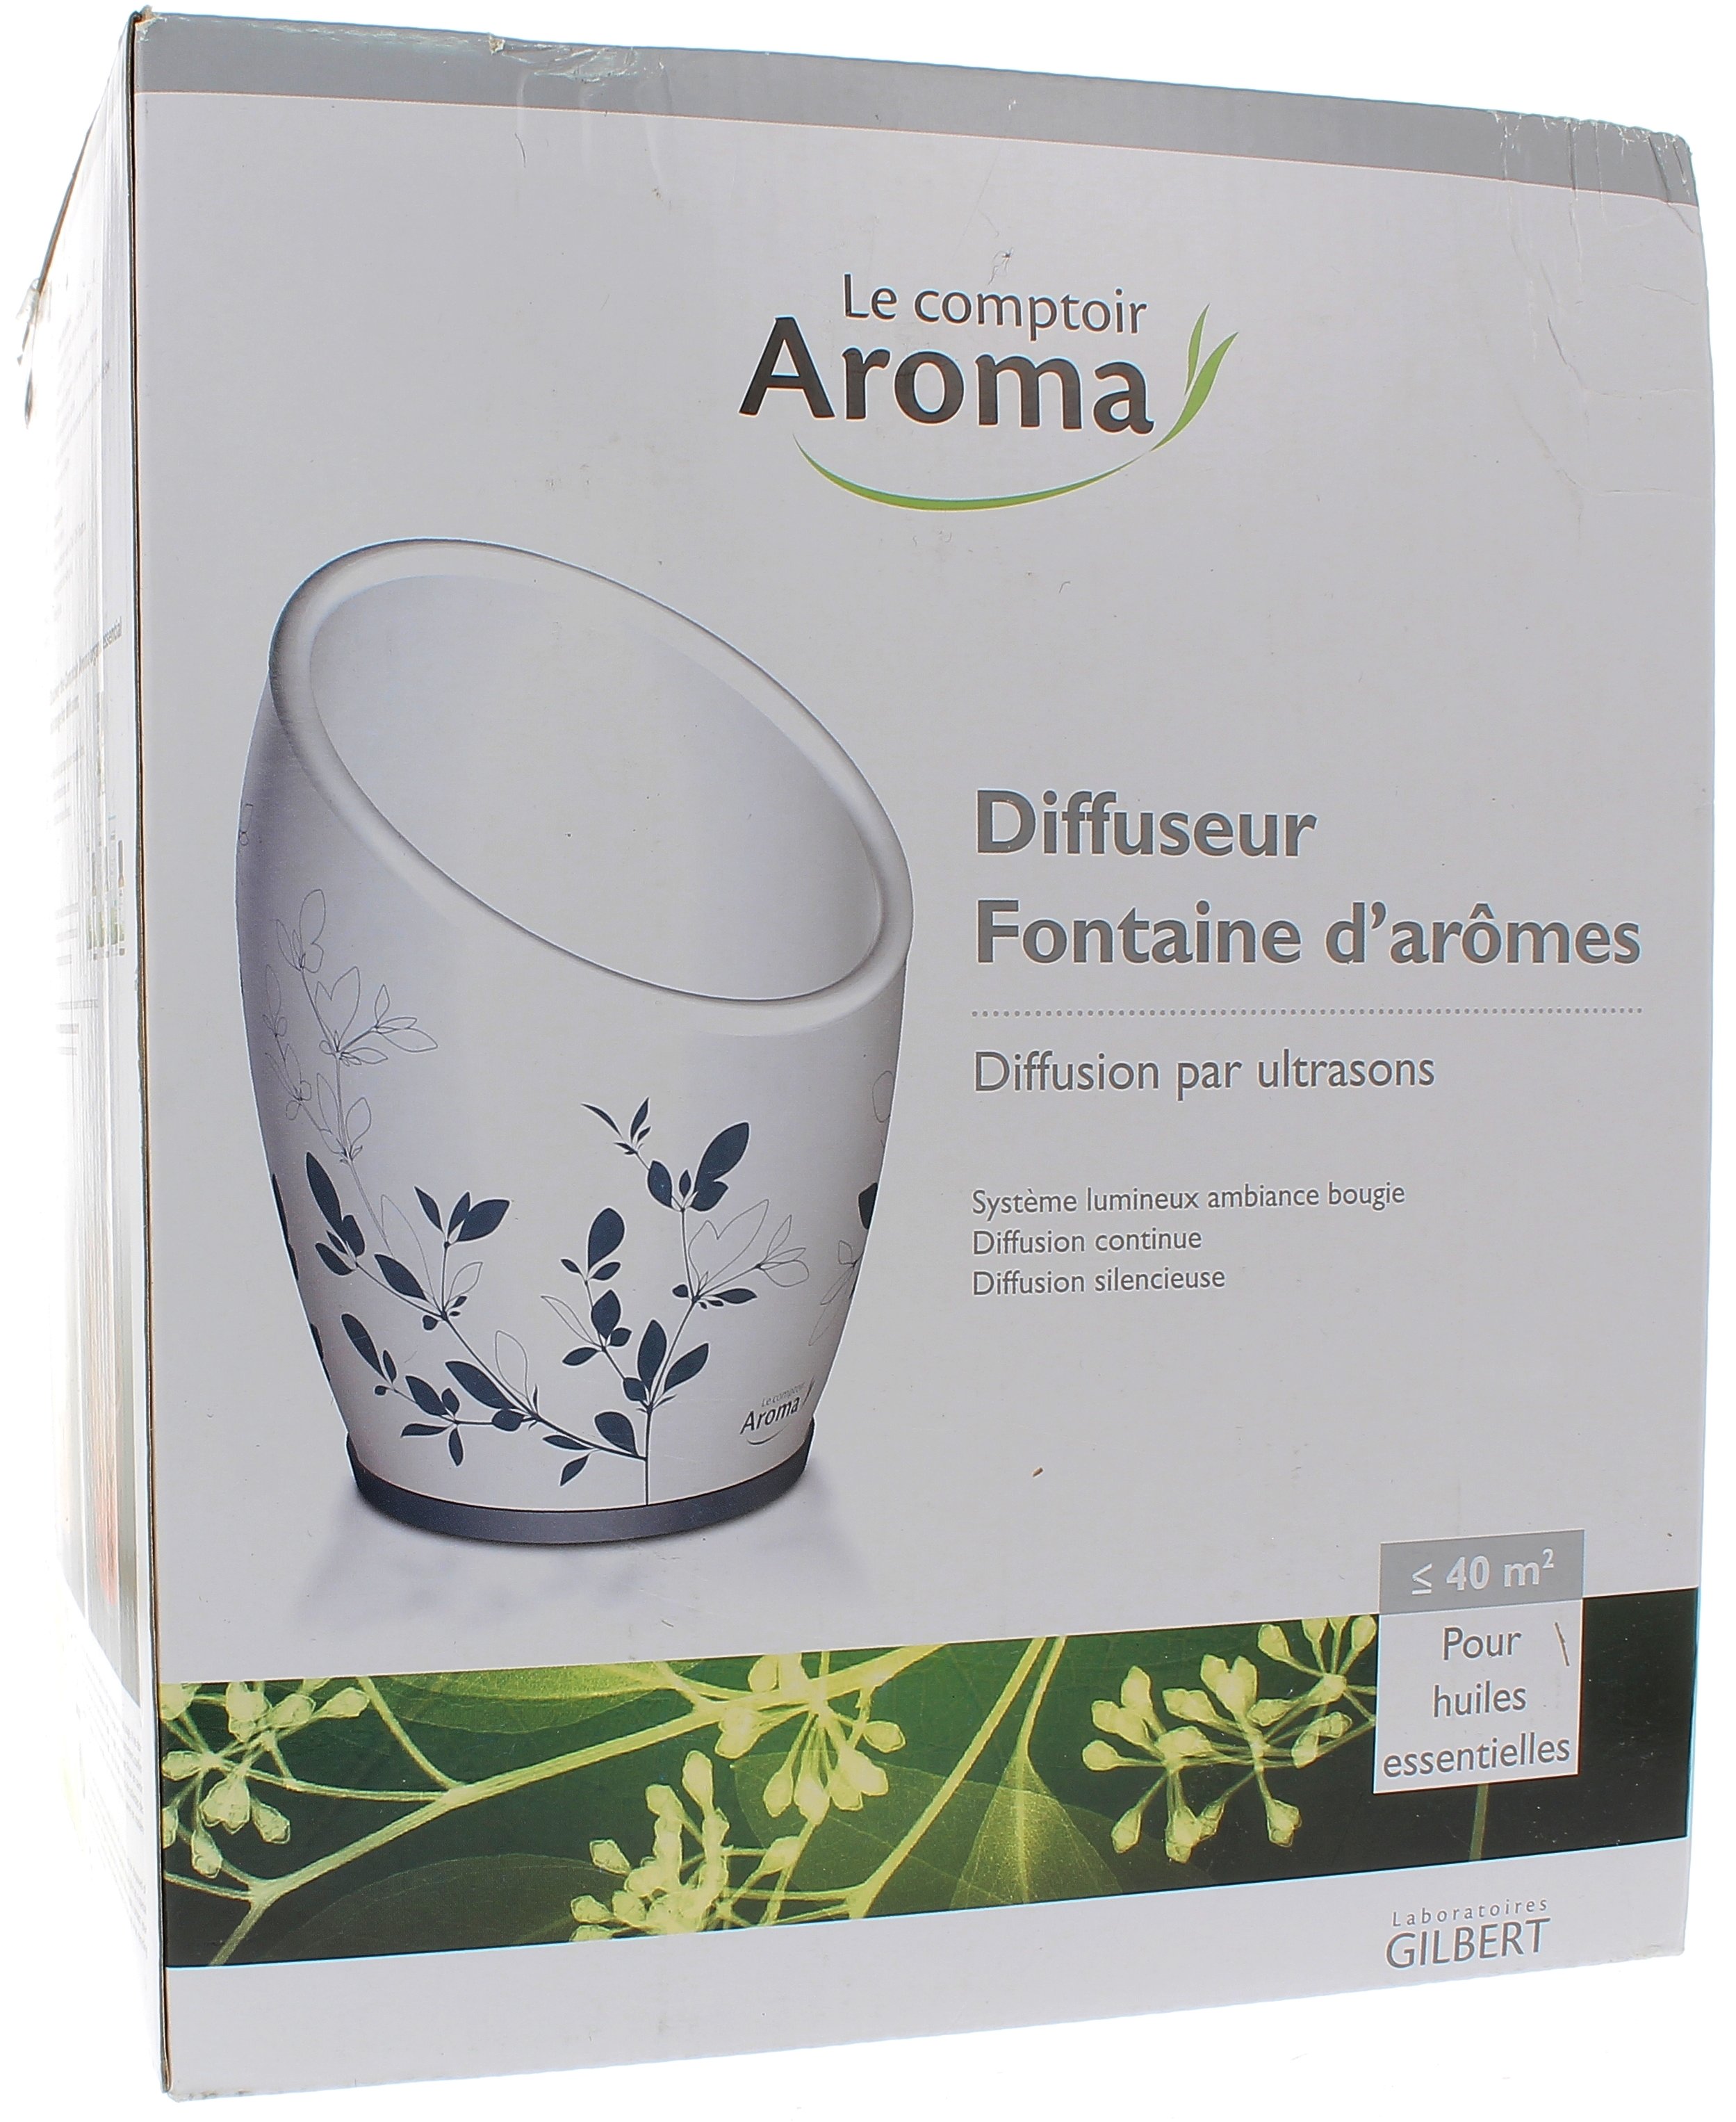 Fontaine d'arômes diffuseur d'huiles essentielles Le comptoir Aroma - 1 diffuseur